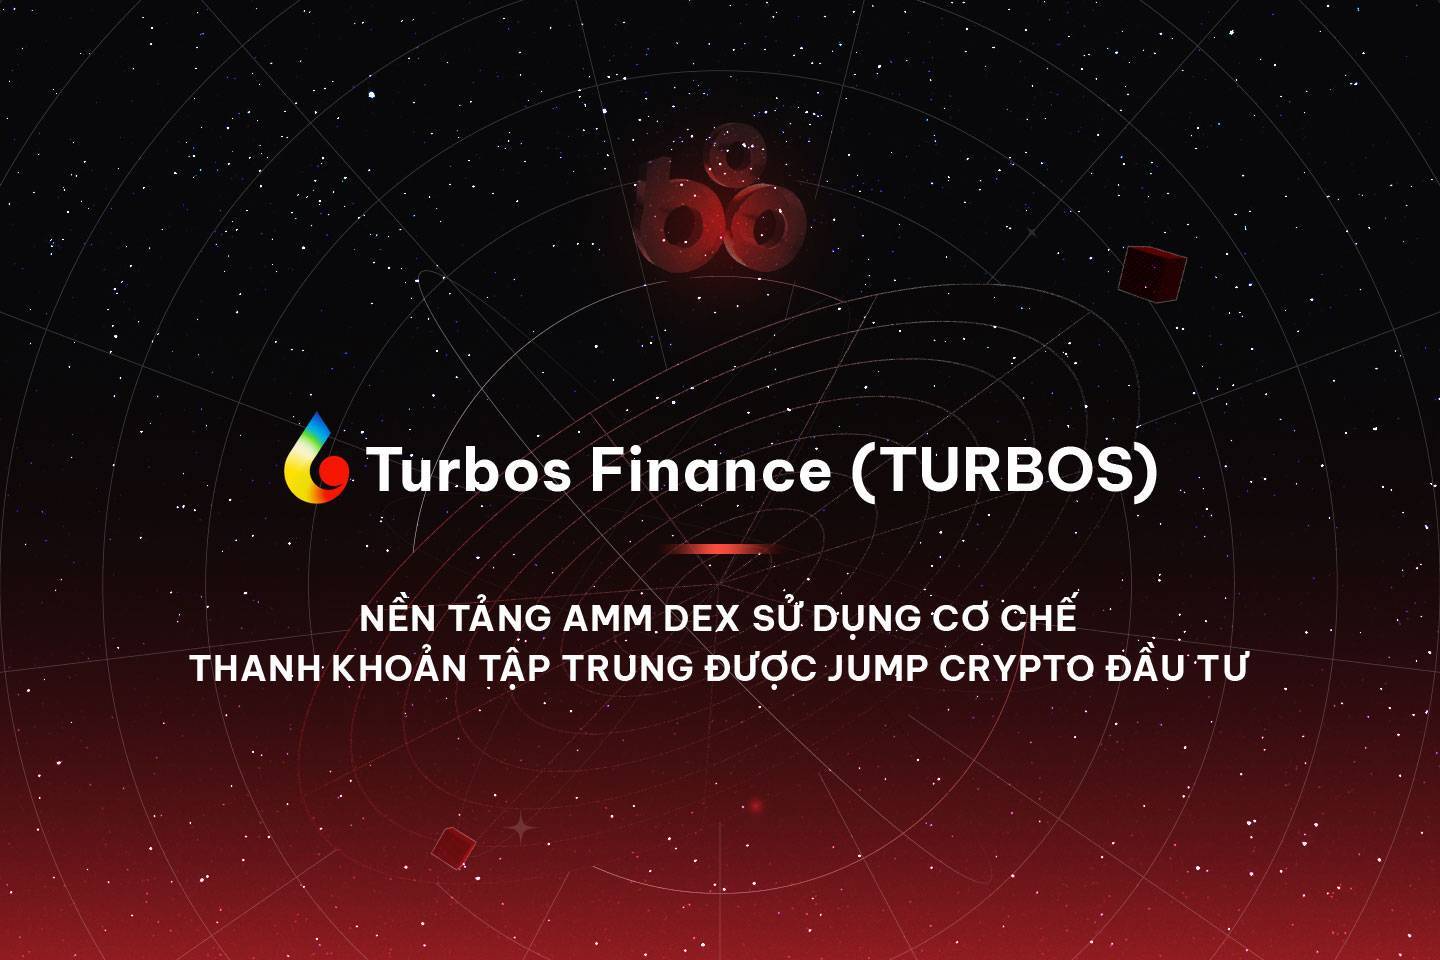 Turbos Finance turbos - Nền Tảng Amm Dex Sử Dụng Cơ Chế Thanh Khoản Tập Trung Được Jump Crypto Đầu Tư